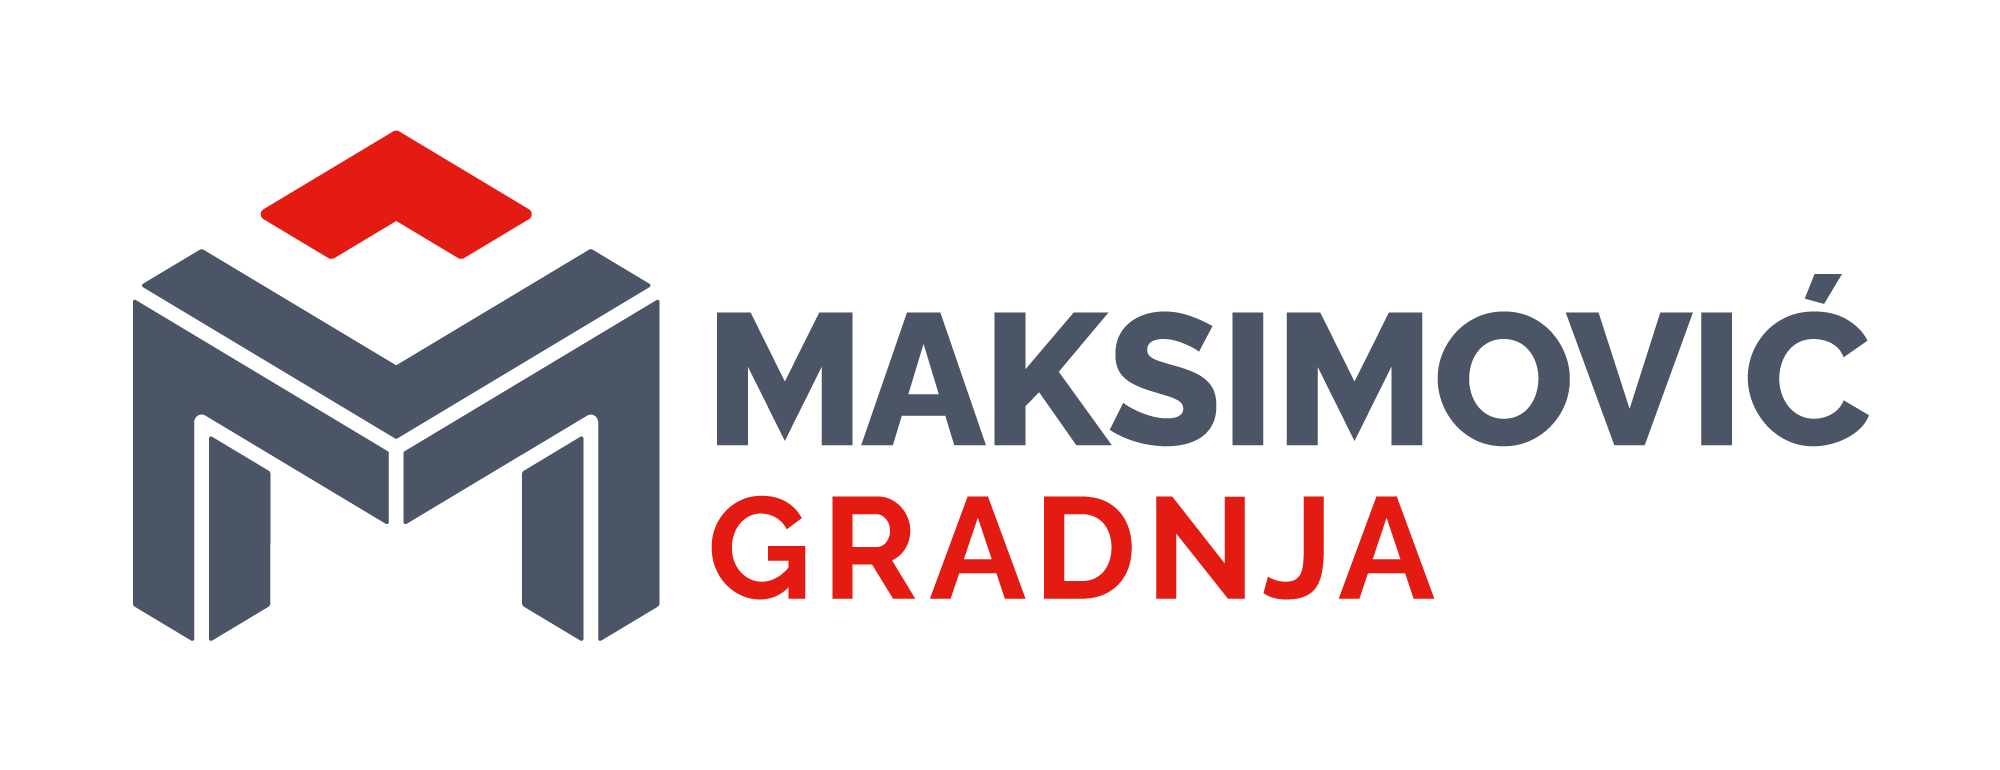 Maksimović-gradnja logo